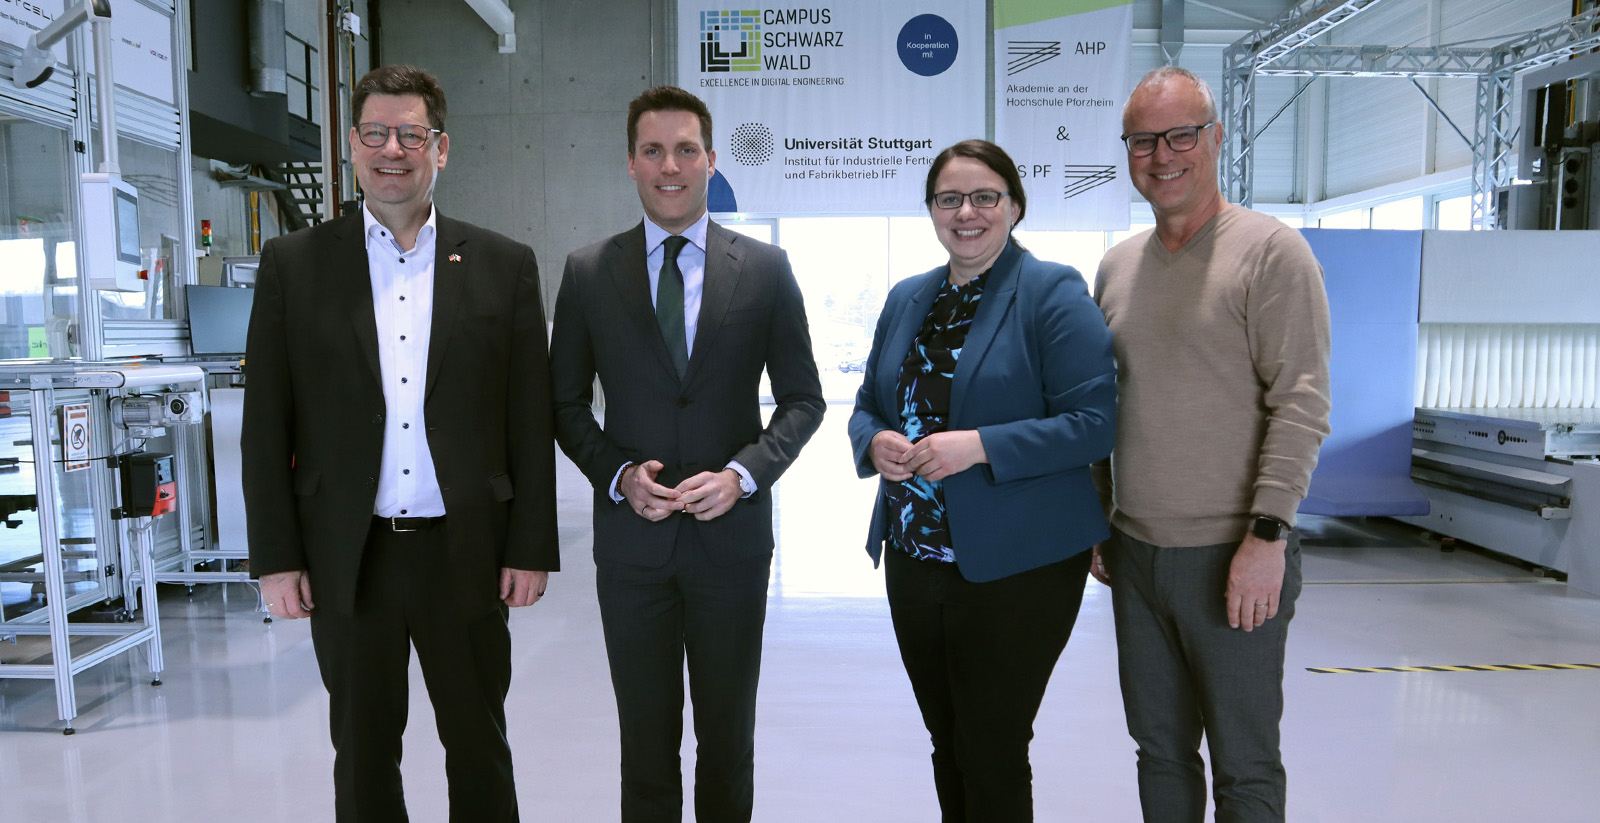 Besuch beim Campus Schwarzwald: CDU-Landesvorsitzender Manuel Hagel erkundet innovative Projekte und Wasserstoff-Forschung